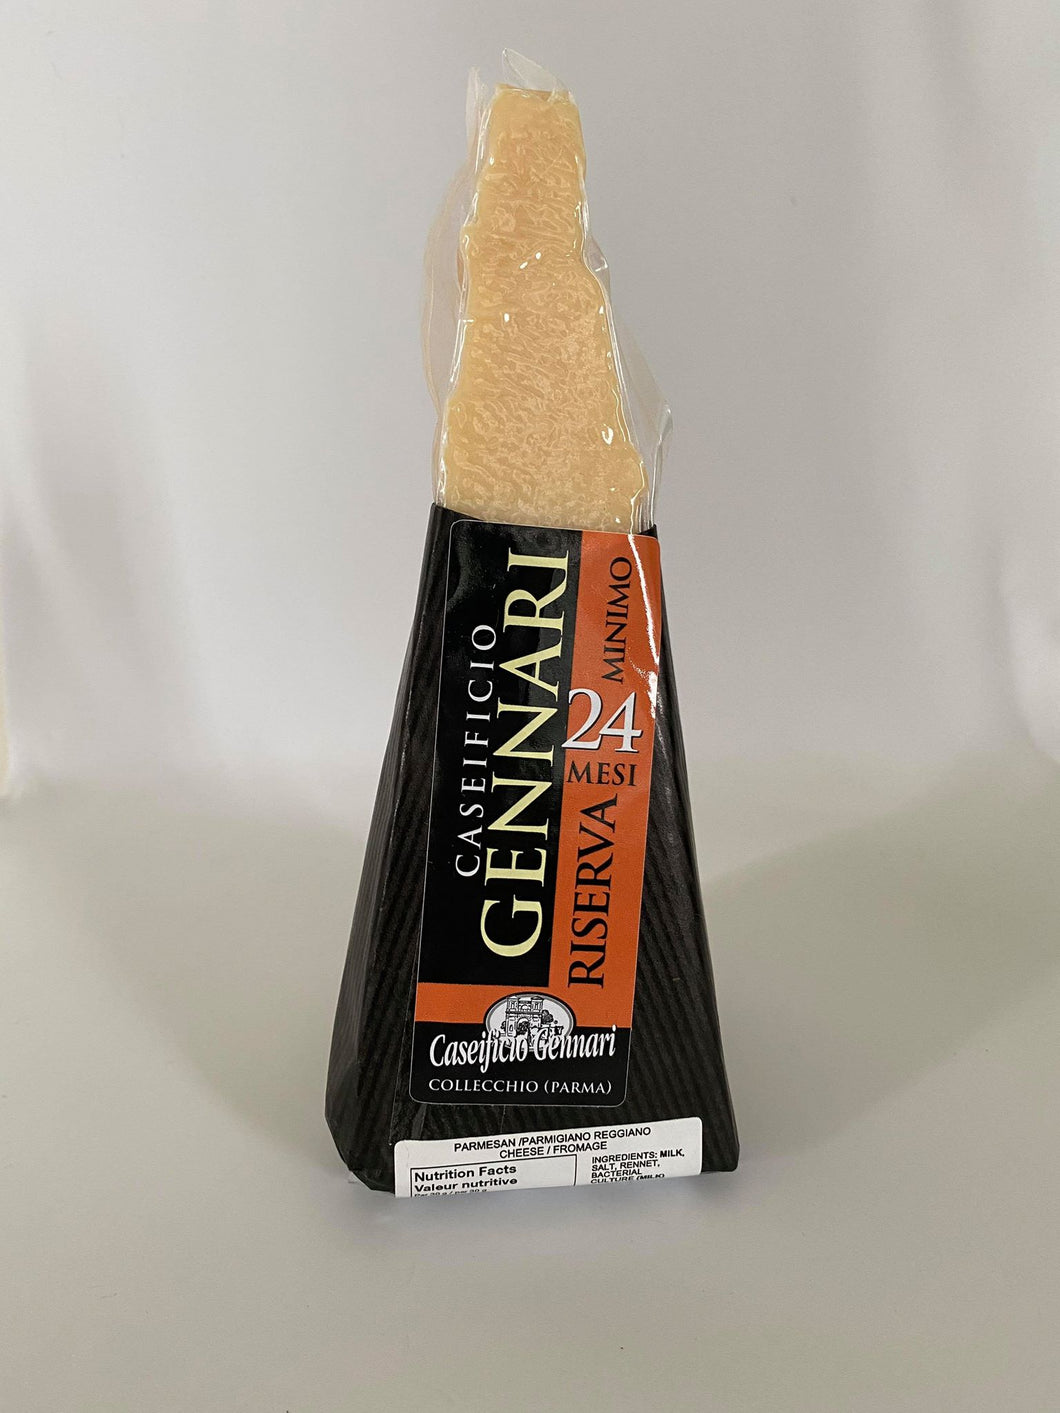 Gennari - Parmigiano Reggiano - 24 to 180 months - approx. 250g